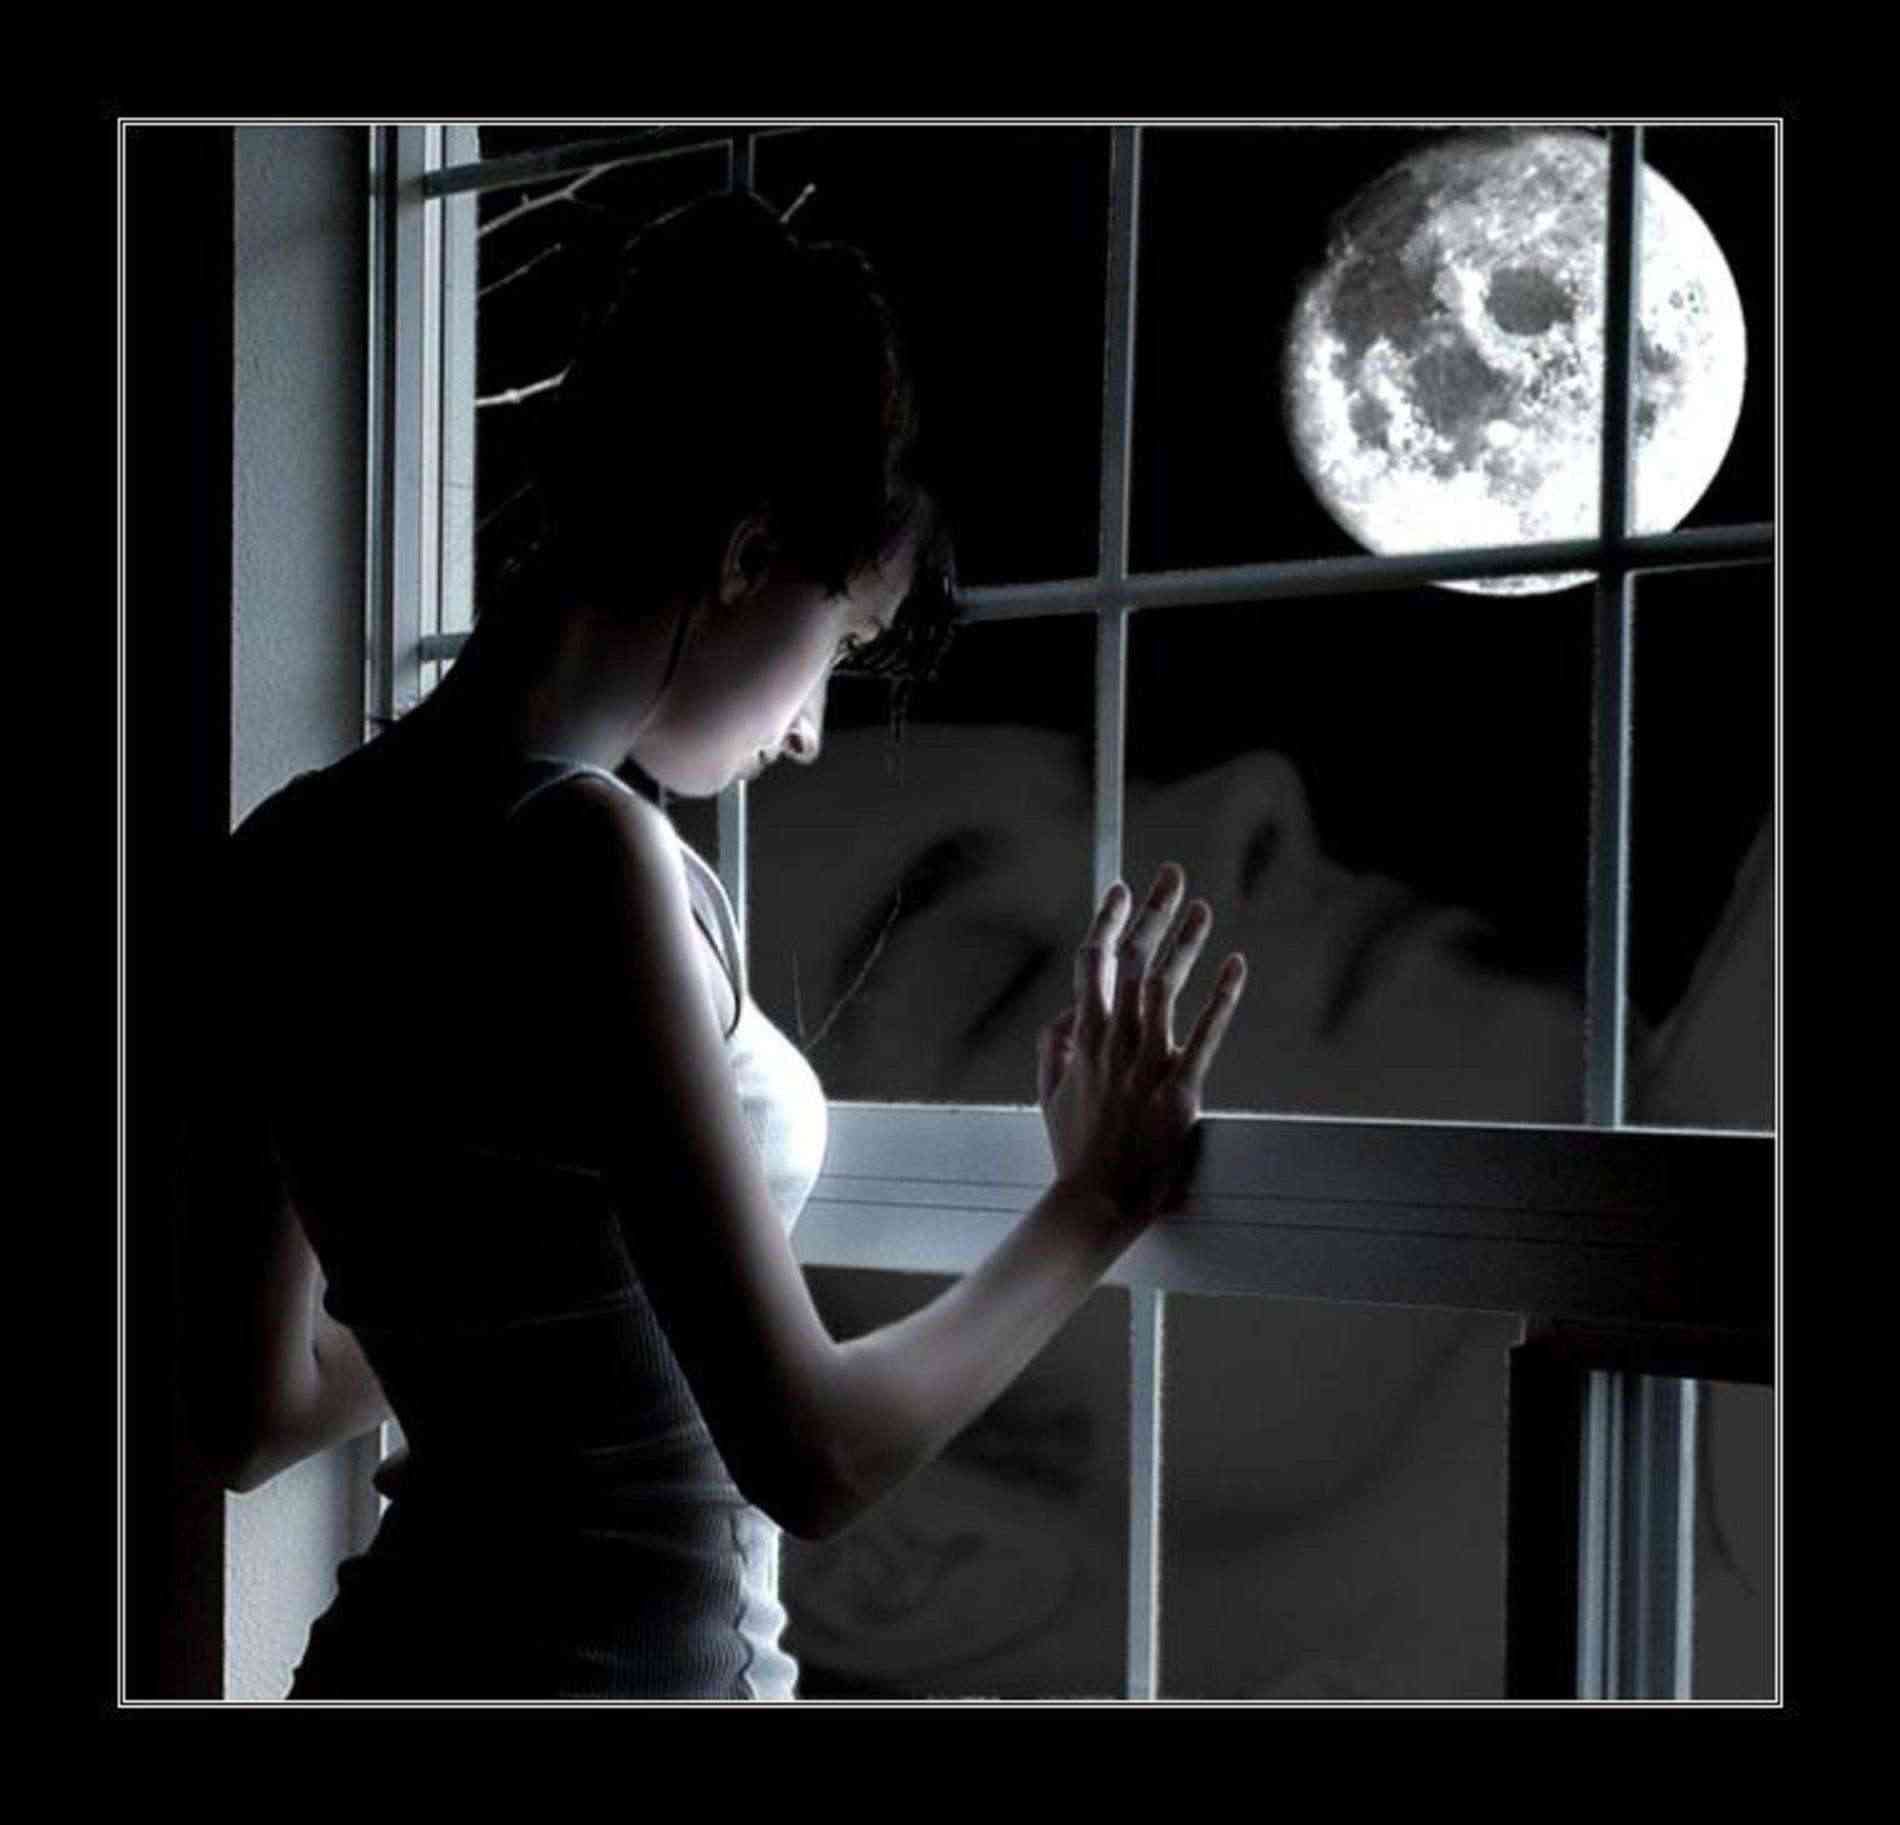 Плачешь у окна по нему скучаешь. Луна в окне. Девушка ждет у окна. Женщина в полумраке. Женщина ночь одиночество.